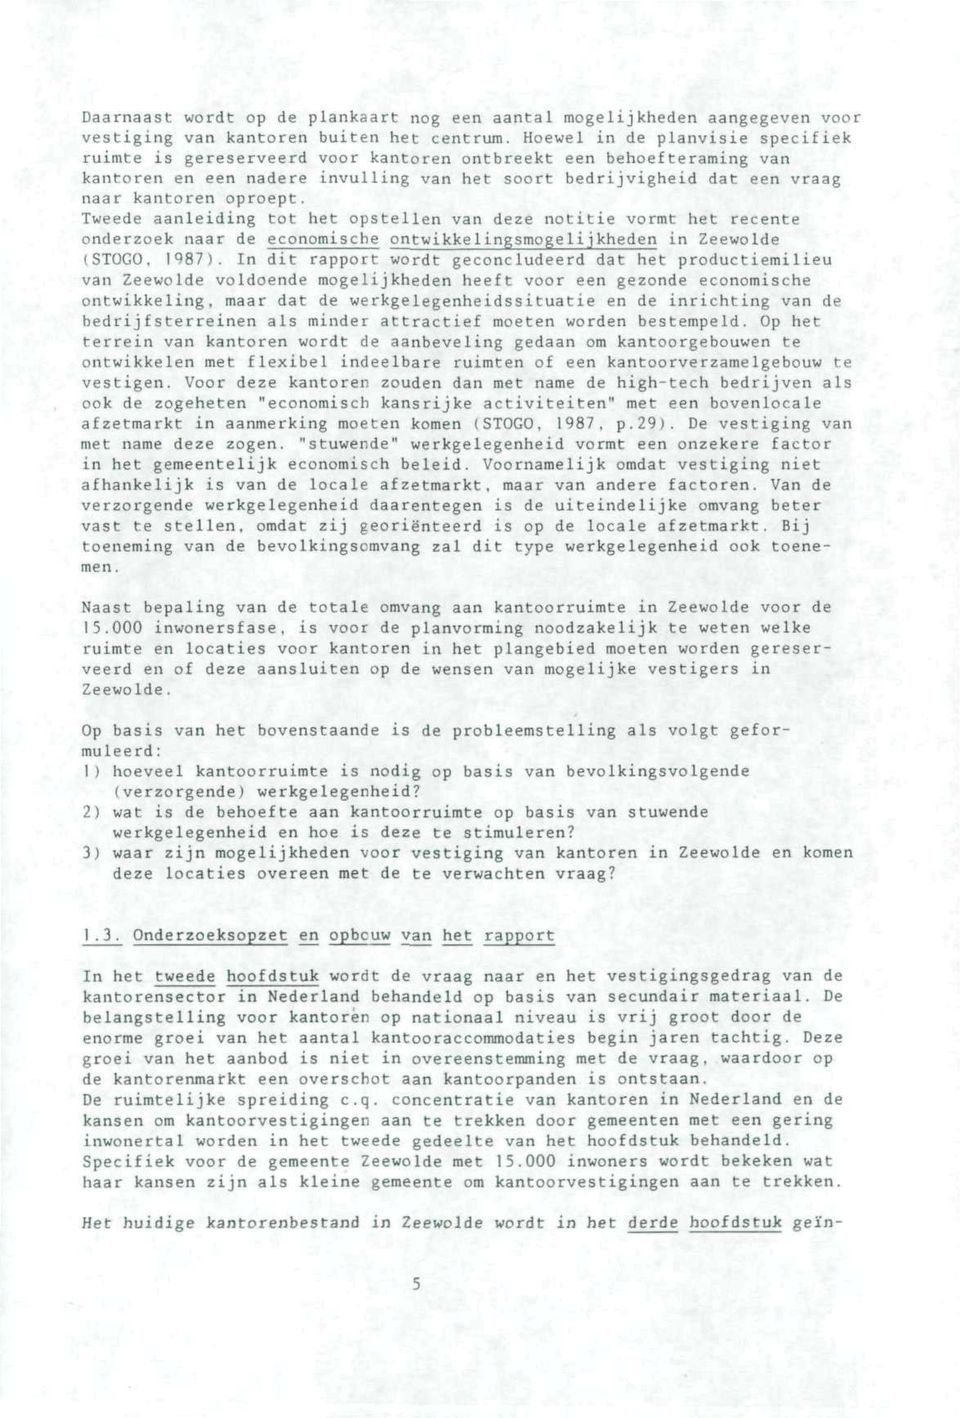 Tweede aanleiding tot het opstellen van deze notitie vormt het recente onderzoek naar de economische ontwikke1ingsmogelijkheden in Zeewolde (STOGO, 1987).